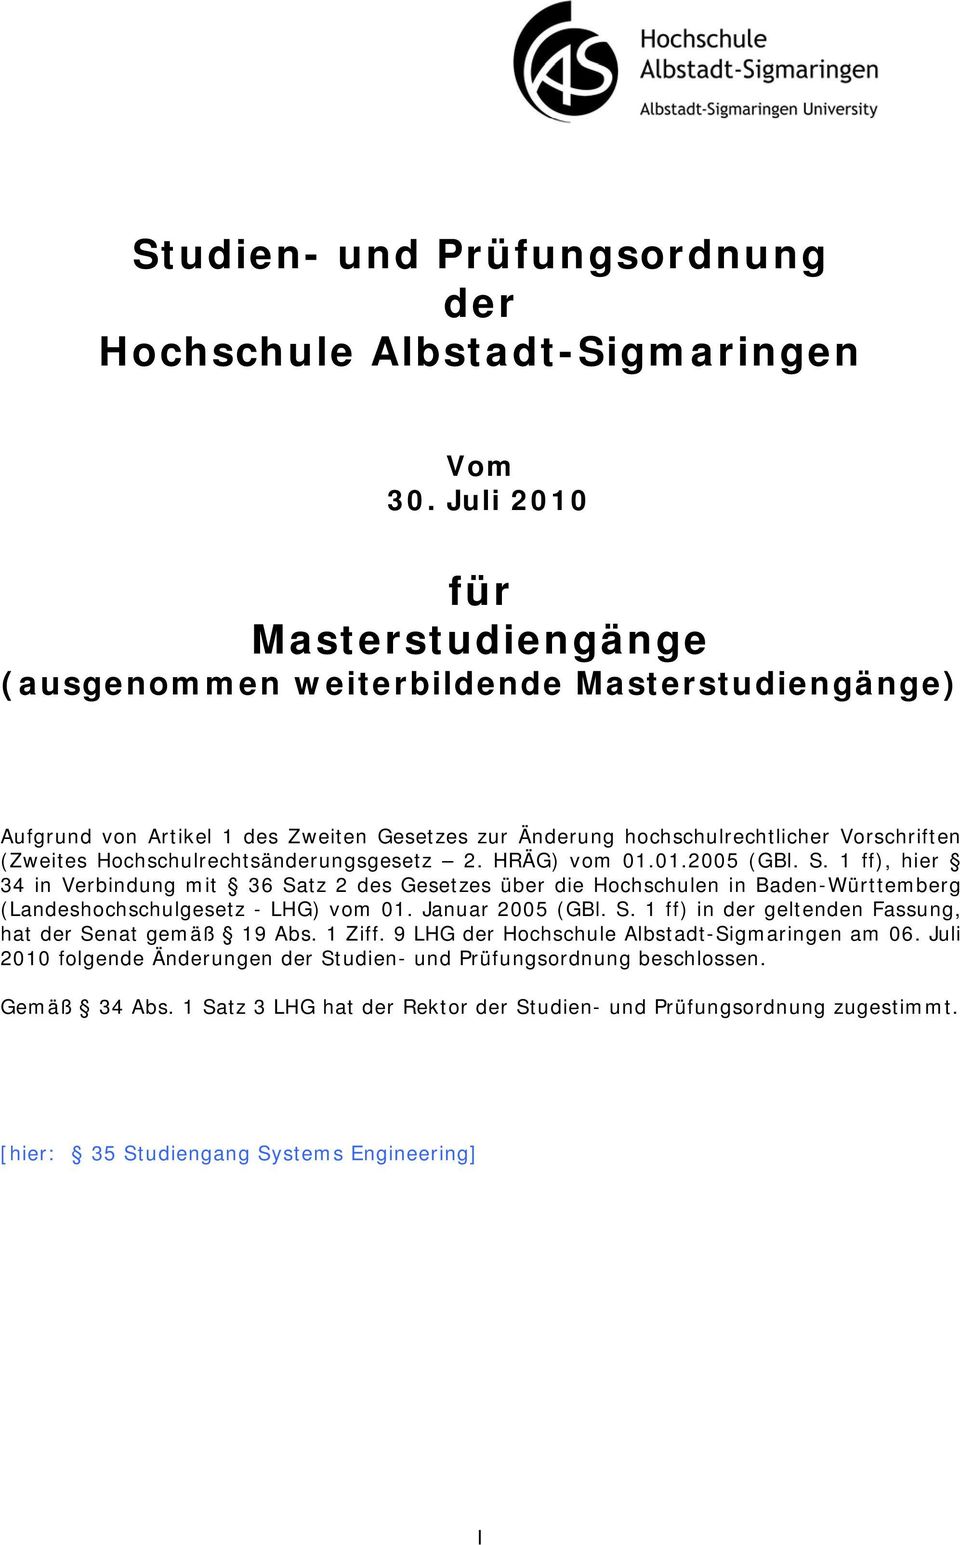 Hochschulrechtsänderungsgesetz 2. HRÄG) vom 01.01.2005 (GBl. S. 1 ff), hier 34 in Verbindung mit 36 Satz 2 des Gesetzes über die Hochschulen in Baden-Württemberg (Landeshochschulgesetz - LHG) vom 01.